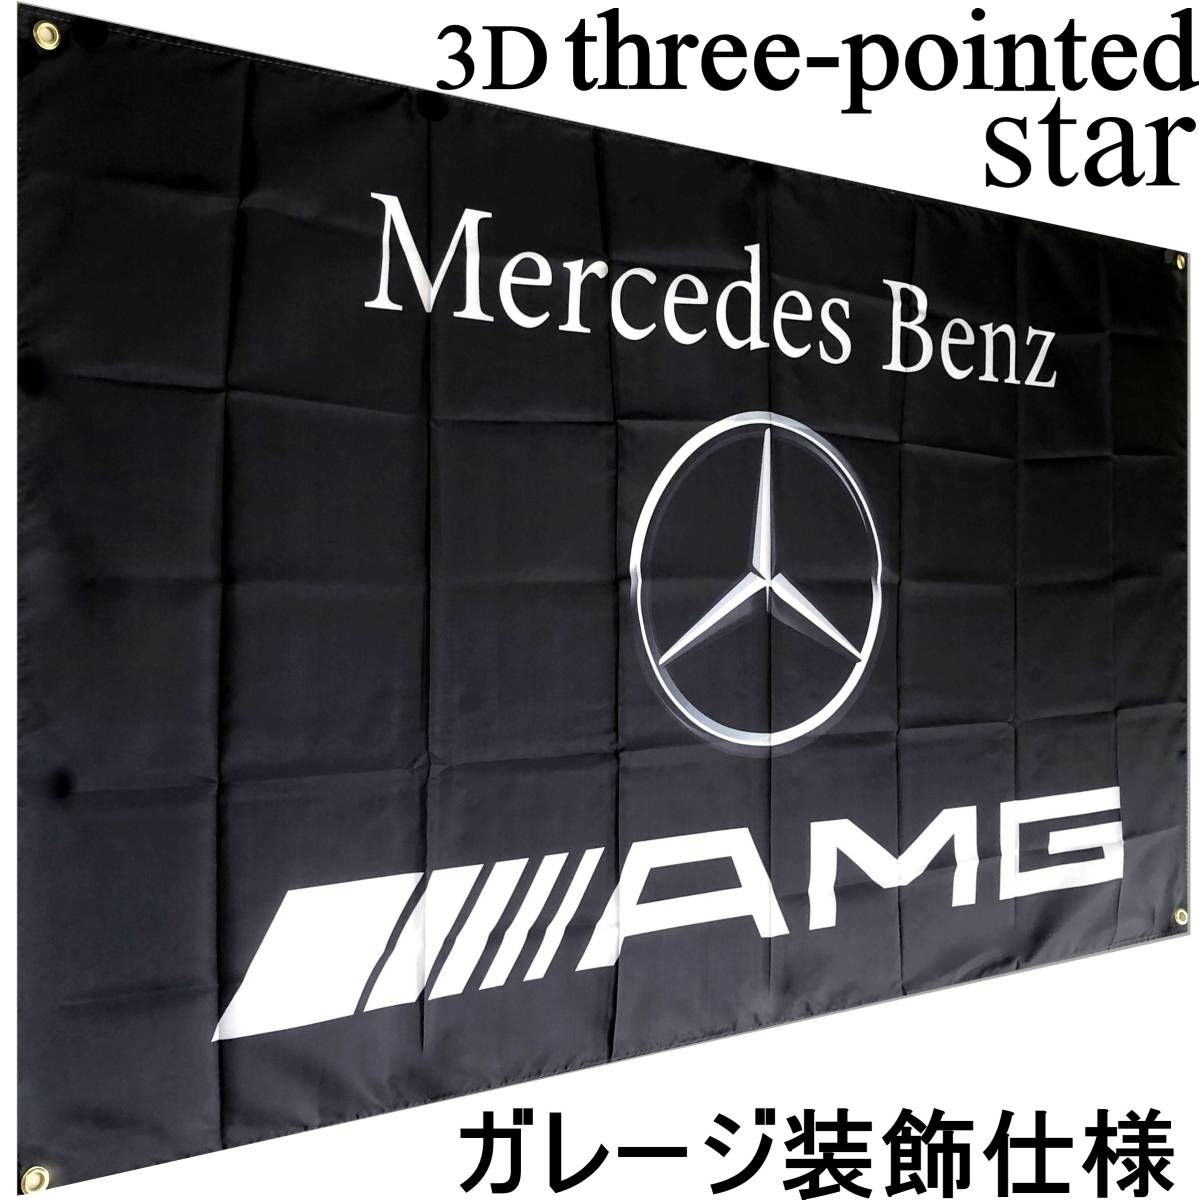 ★ガレージ装飾仕様★ 3Dエンブレム G05 ベンツ旗 ガレージ雑貨 メルセデス Mercedes Benz ベンツフラッグ AMG メルセデスベンツ ポスター_画像2